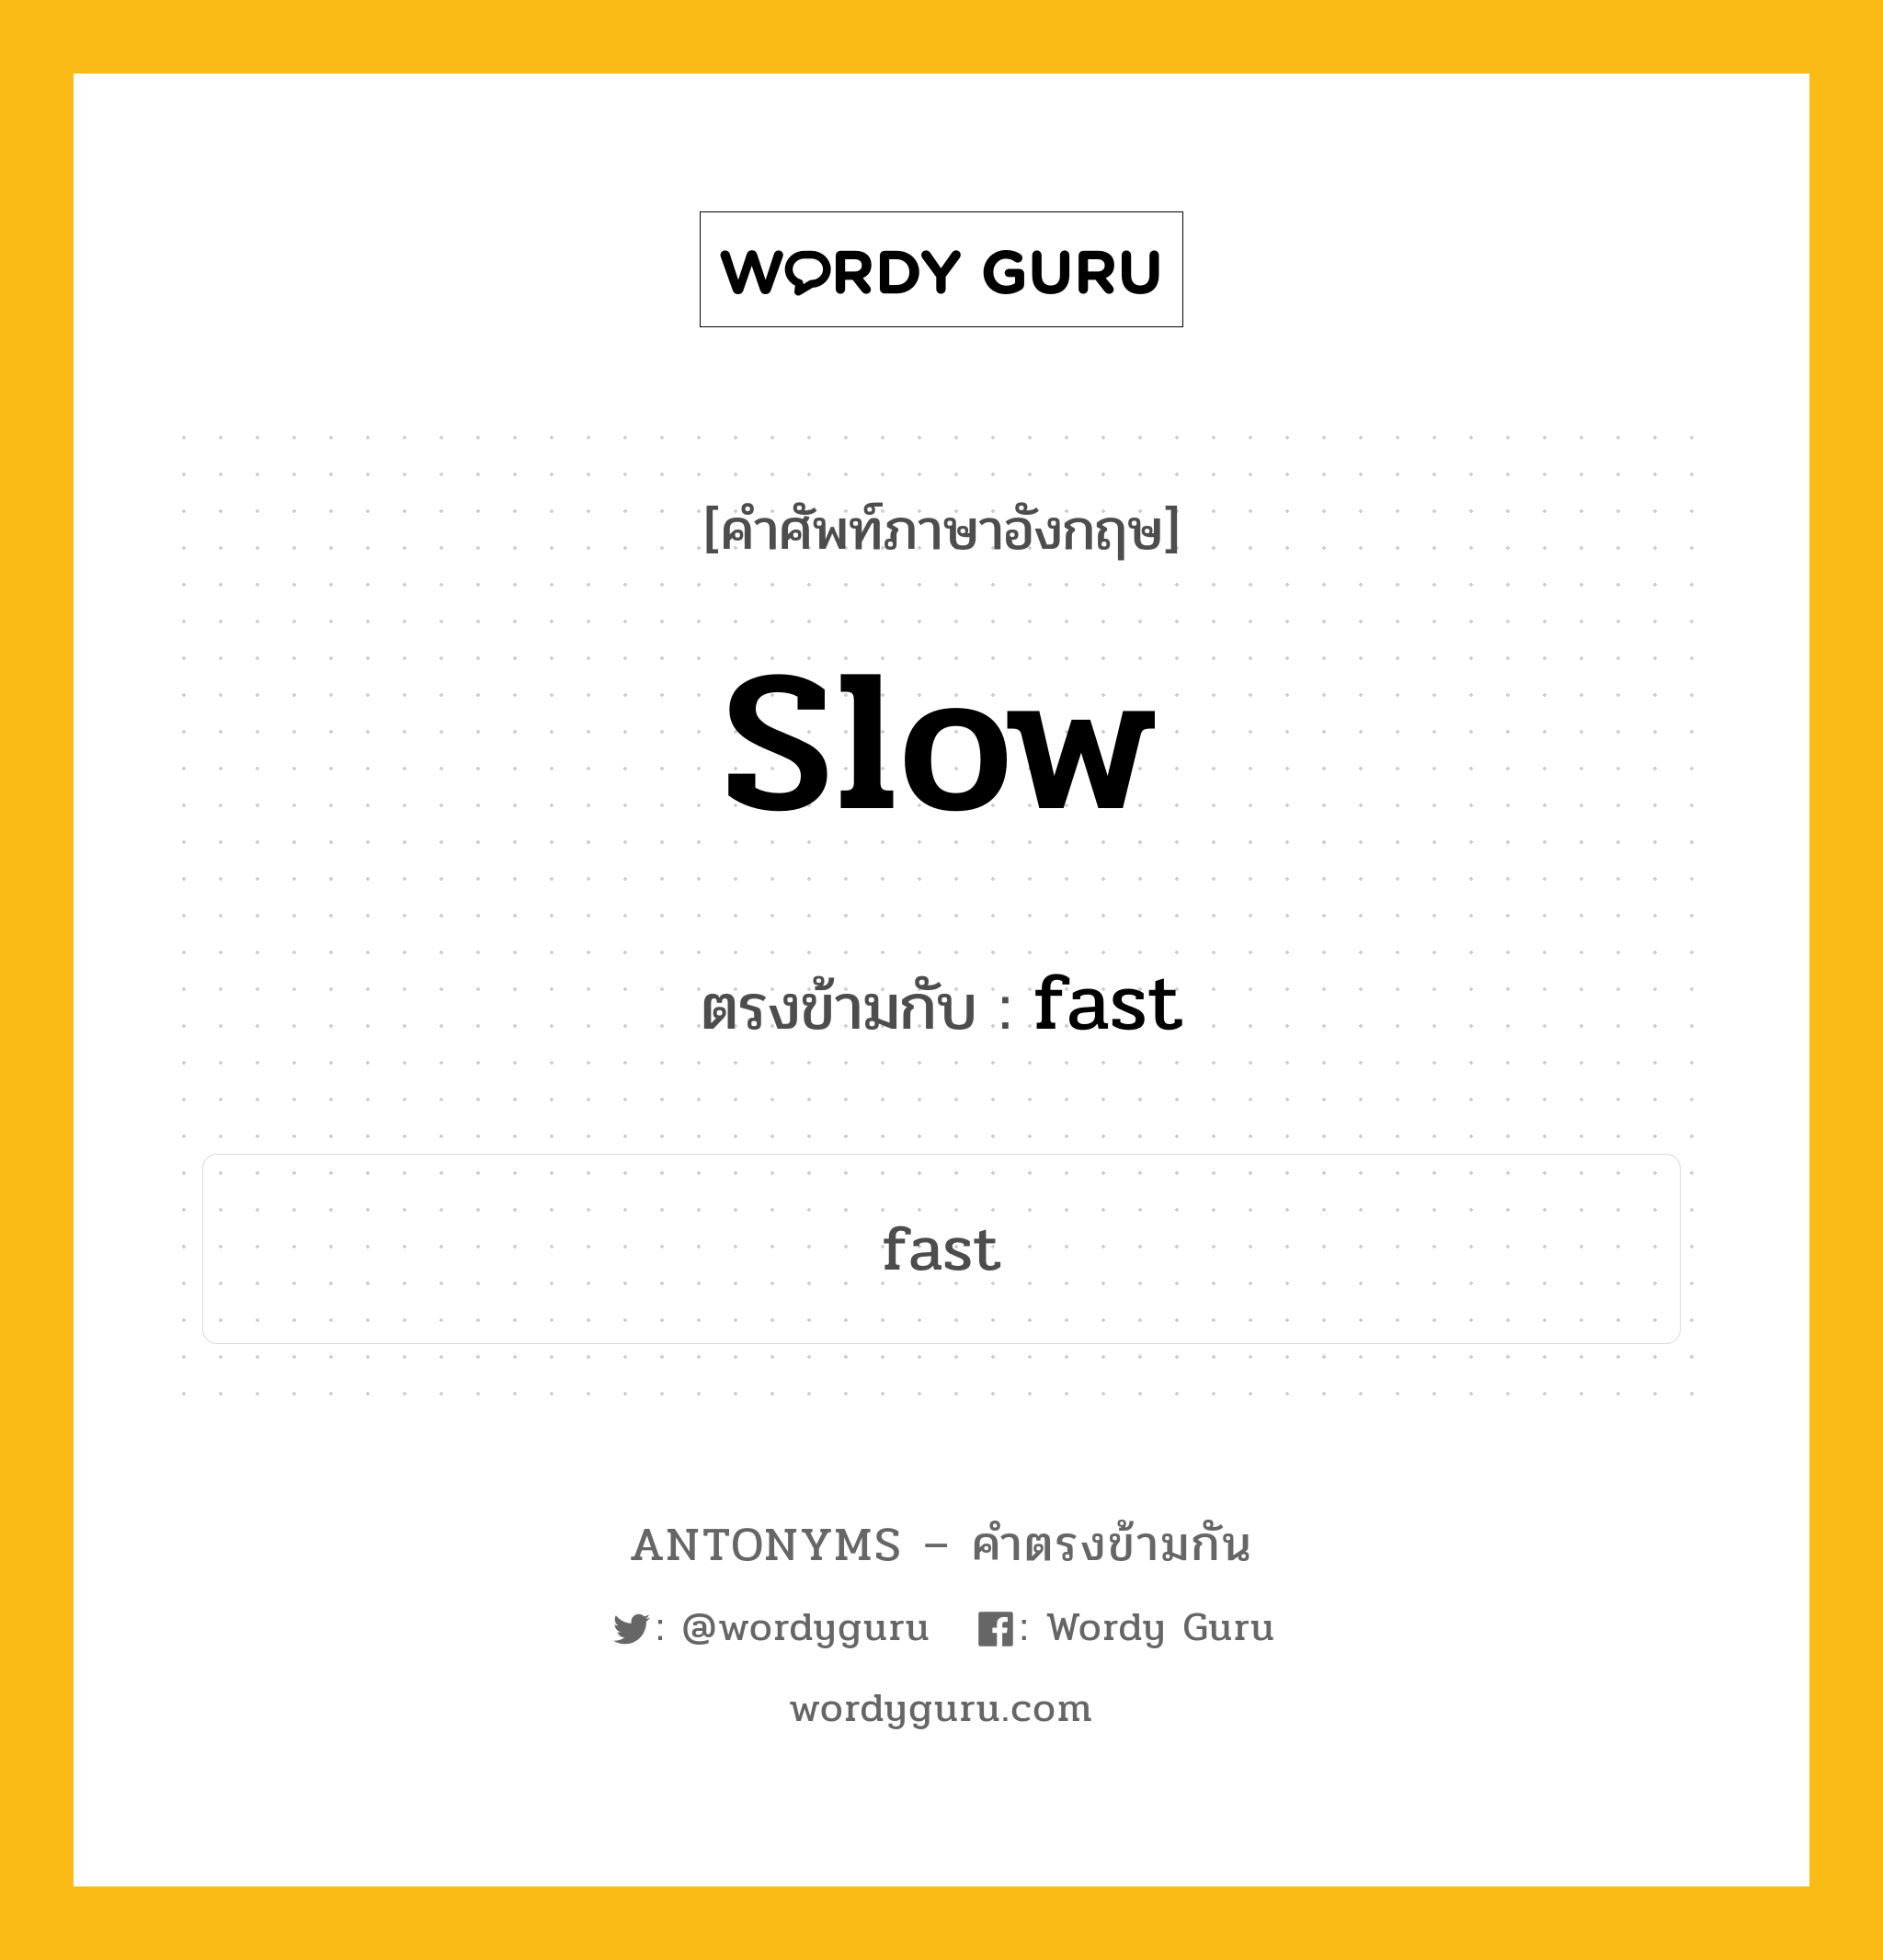 slow เป็นคำตรงข้ามกับคำไหนบ้าง?, คำศัพท์ภาษาอังกฤษ slow ตรงข้ามกับ fast หมวด fast